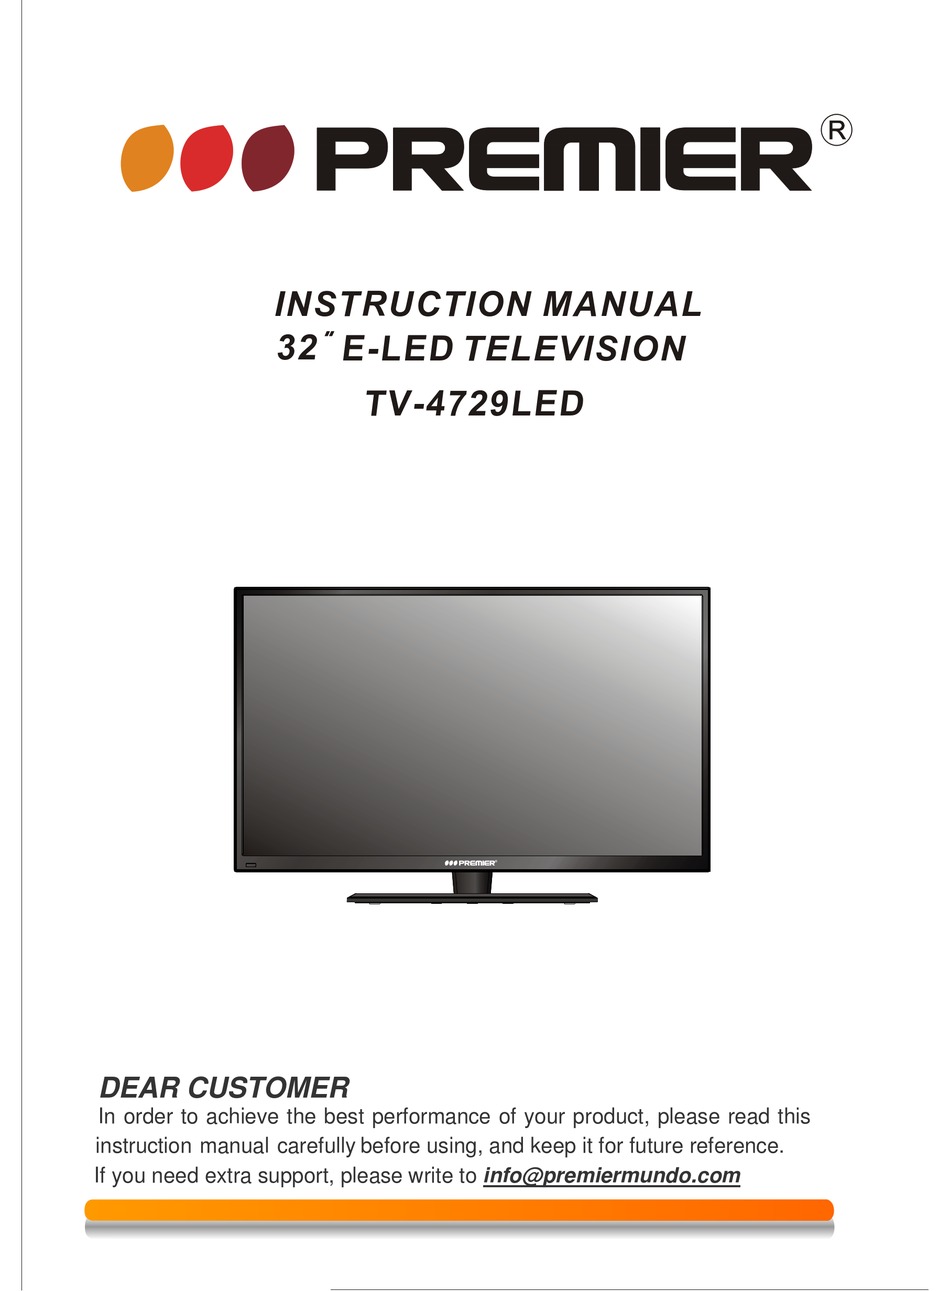 PREMIER TV-4729LED INSTRUCTION MANUAL Pdf Download ManualsLib